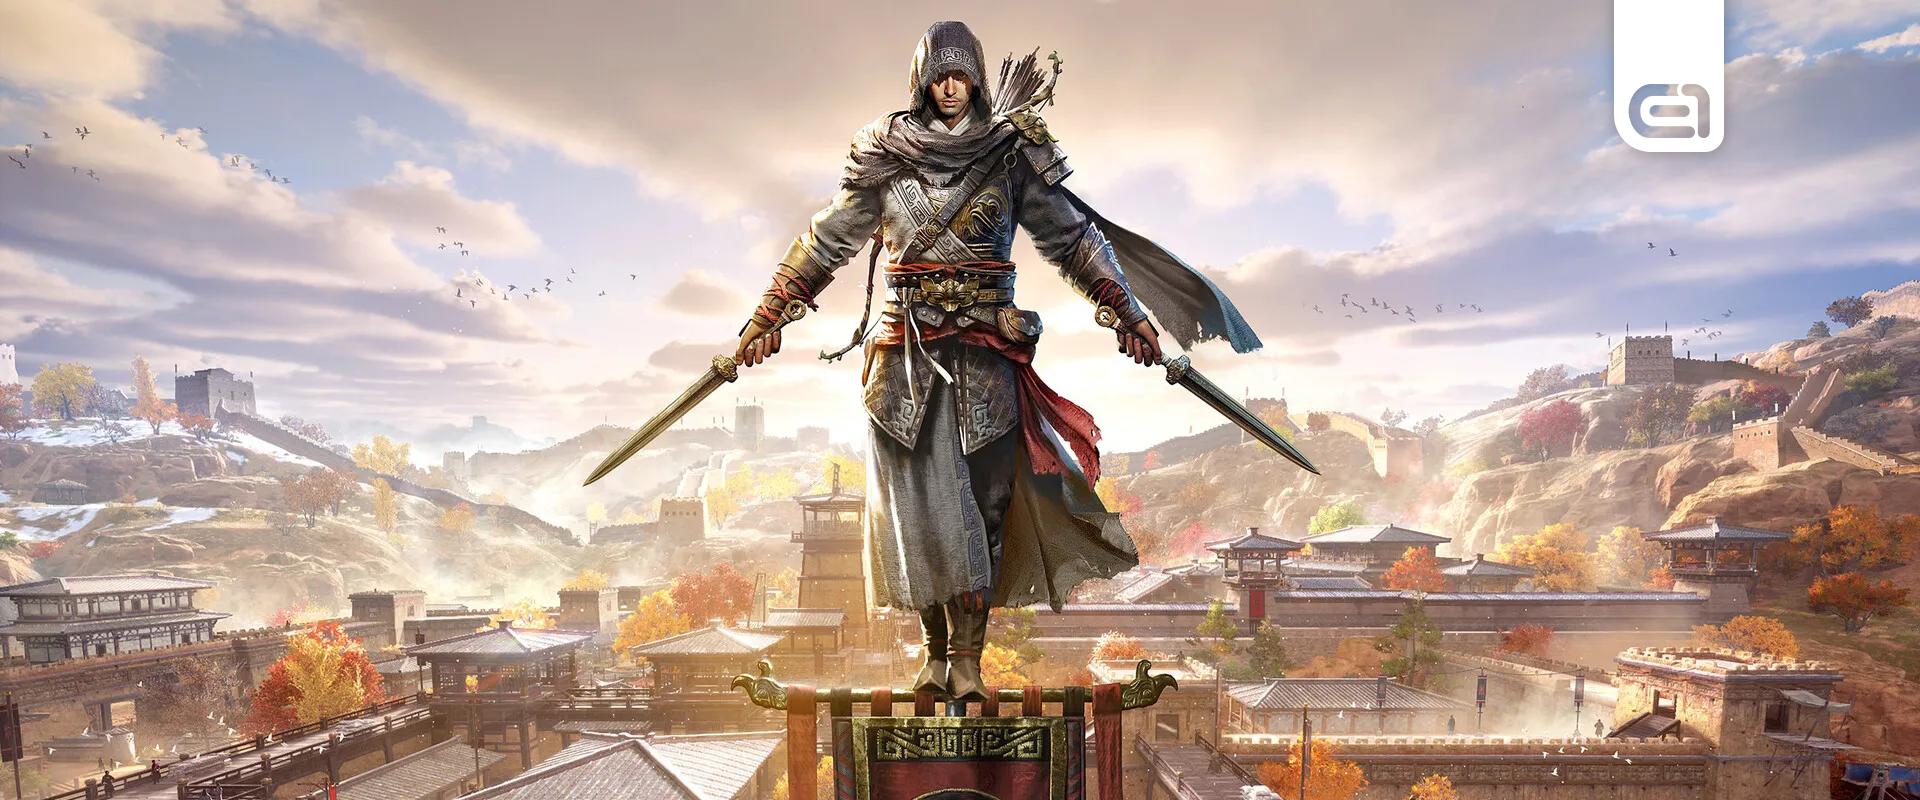 20+ perces gameplay videó szivárgott ki az egyik új Assassin's Creed játékból